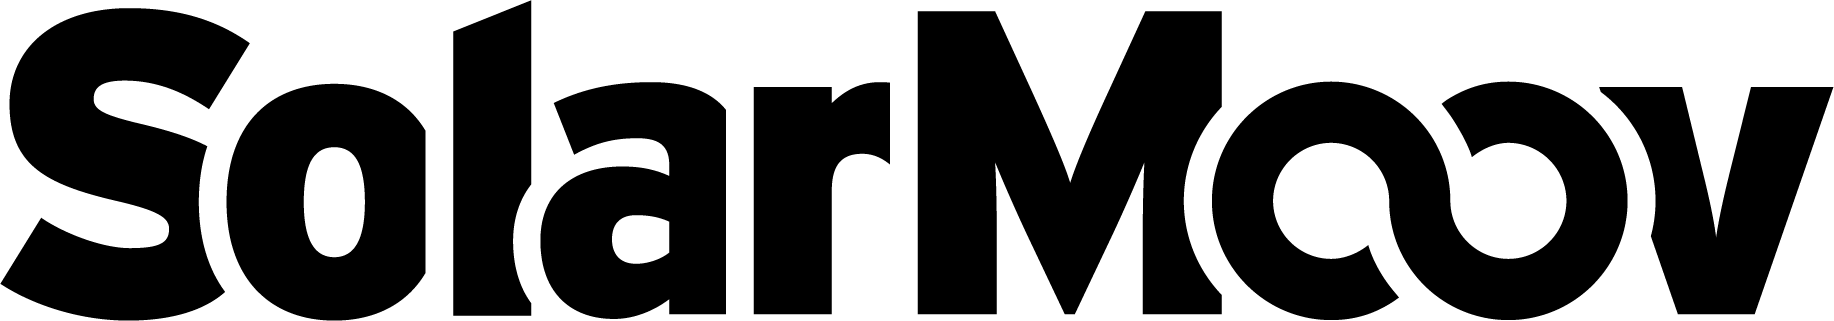 Logo mono noir.png
